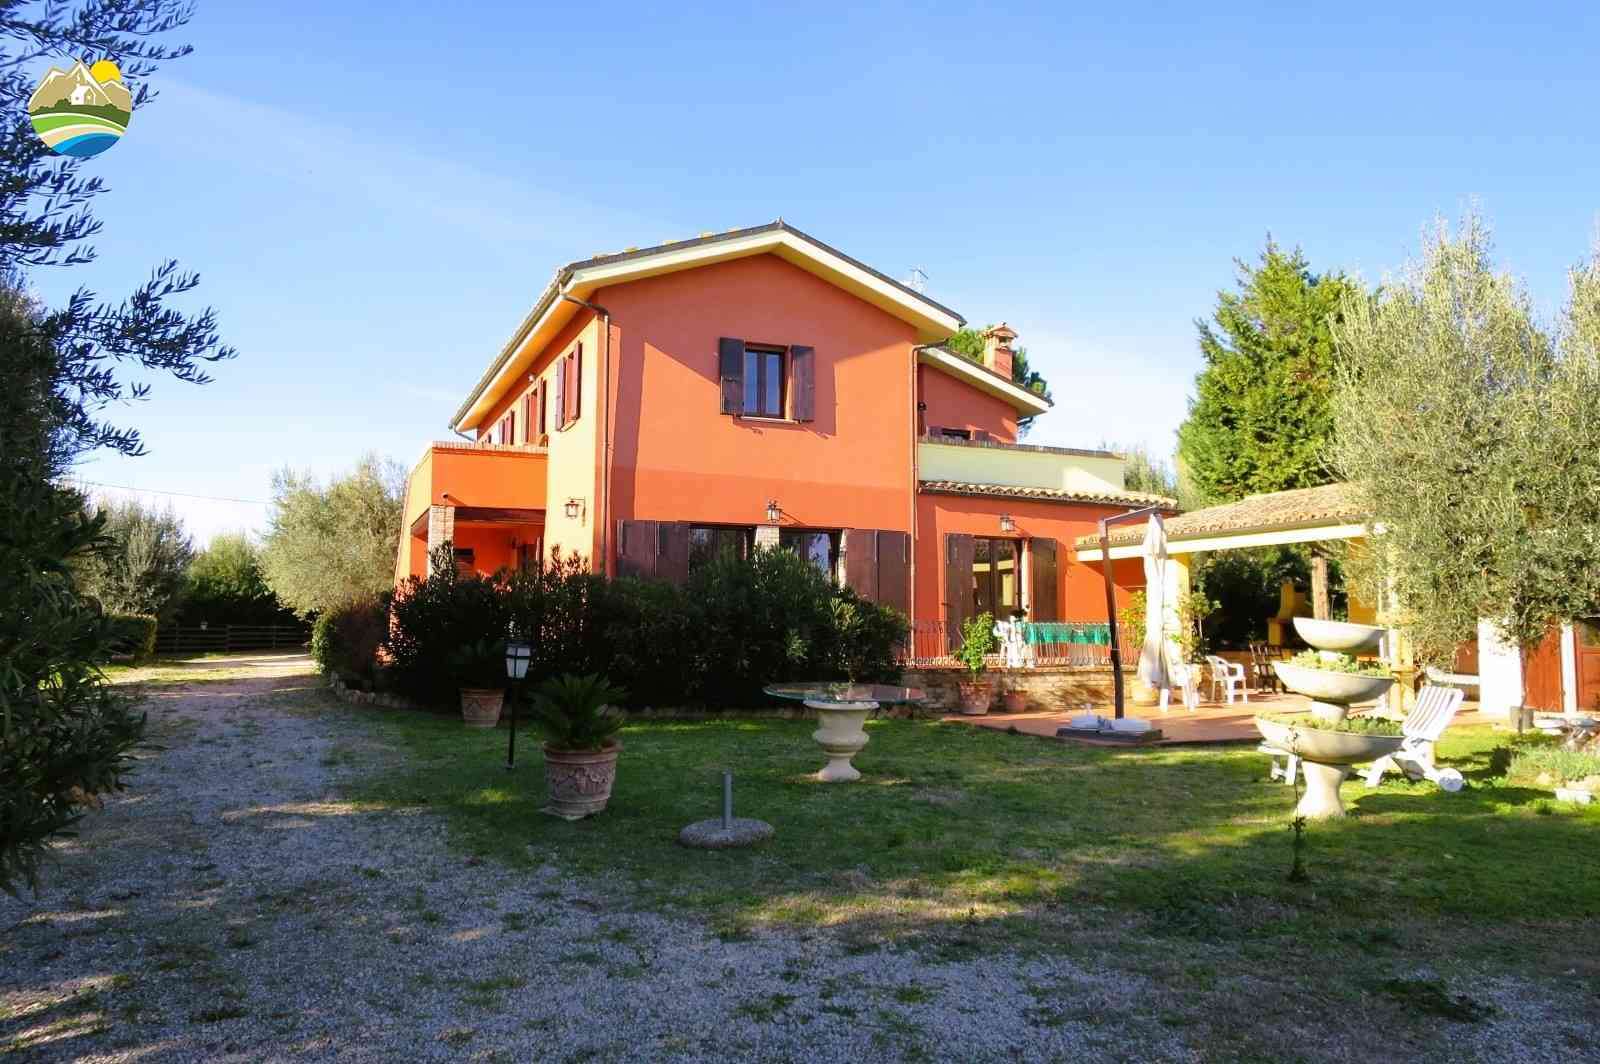 Country Houses Country Houses for sale Bellante (TE), Casale La Vignola - Bellante - EUR 524.401 10